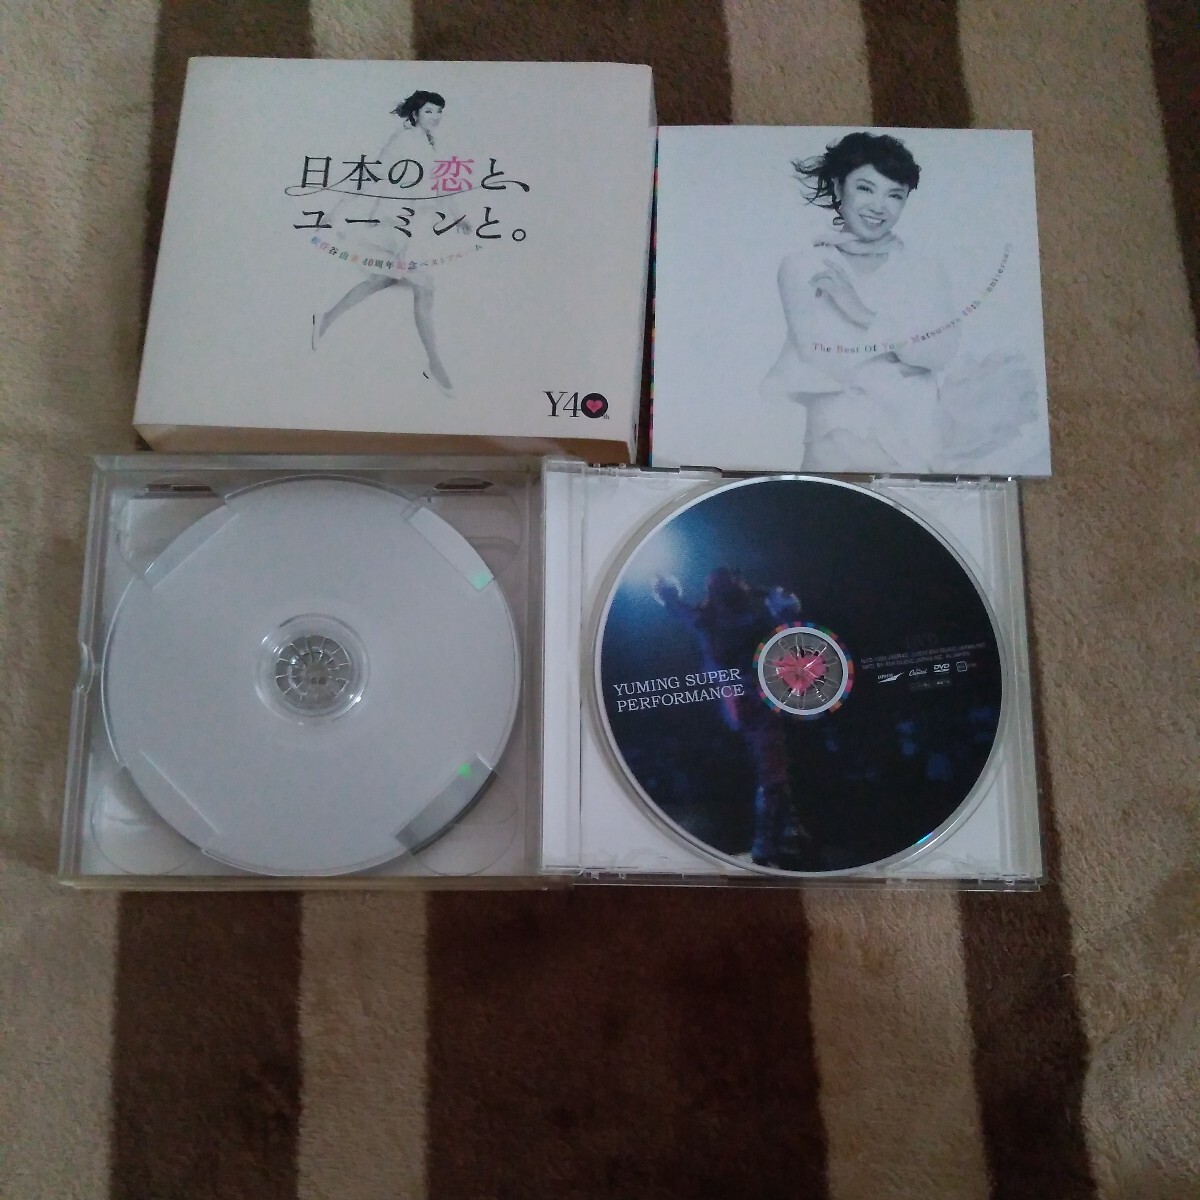 松任谷由実 日本の恋と、ユーミンと。初回限定盤 3CD+DVD (ベスト アルバム) レア 貴重 名盤_画像5